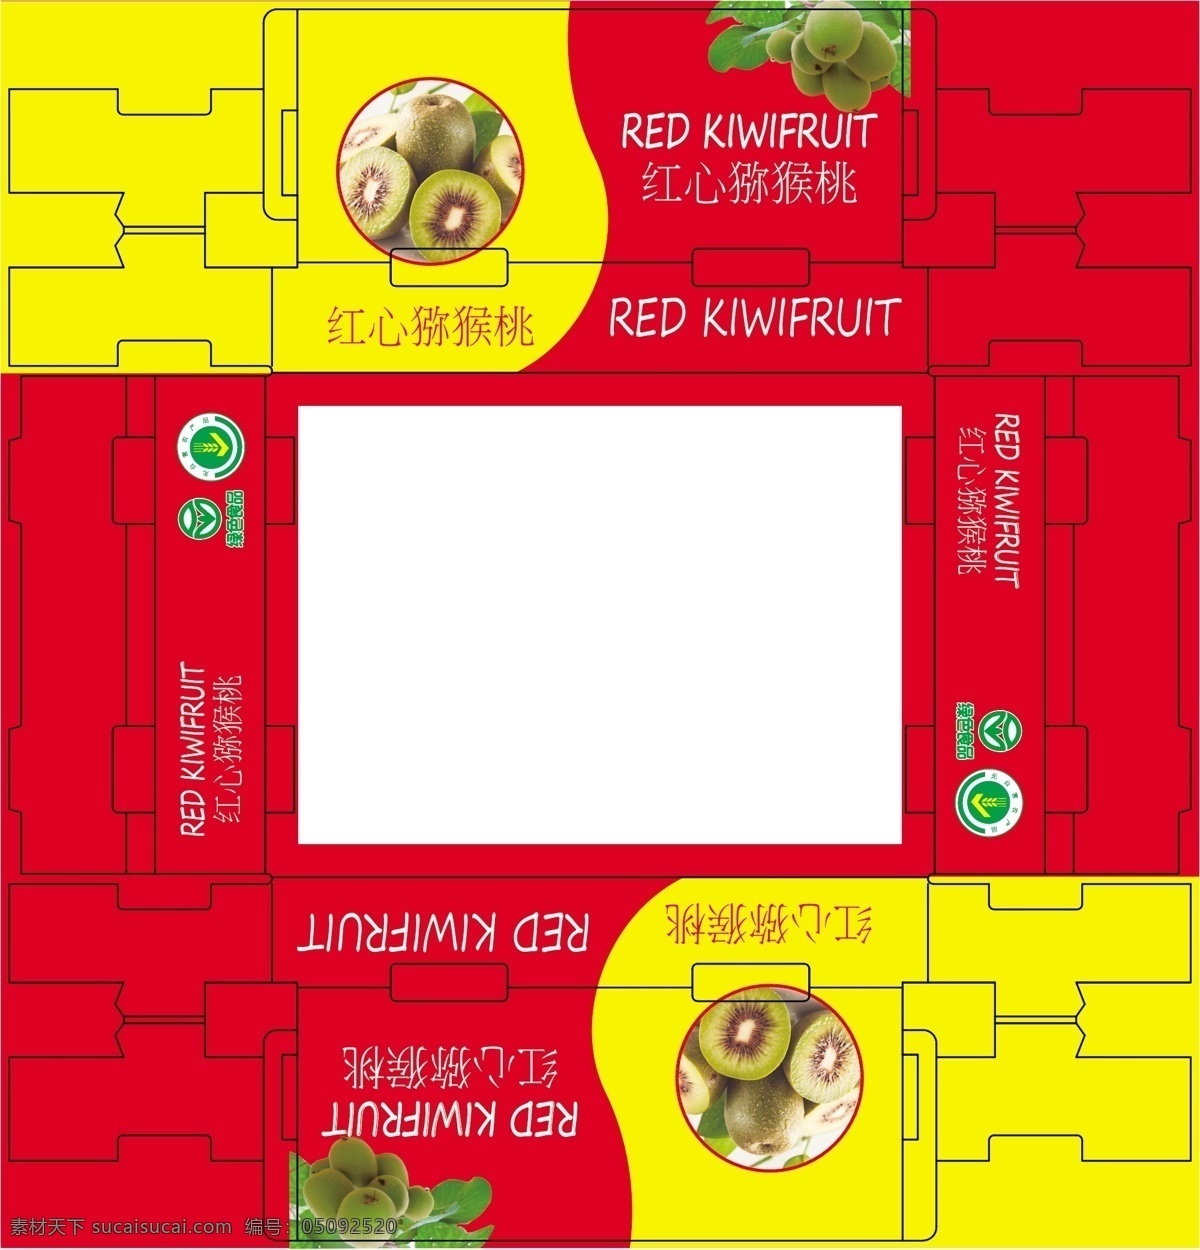 猕猴桃包装 红心猕猴桃 包装 水果 礼品盒 包装设计